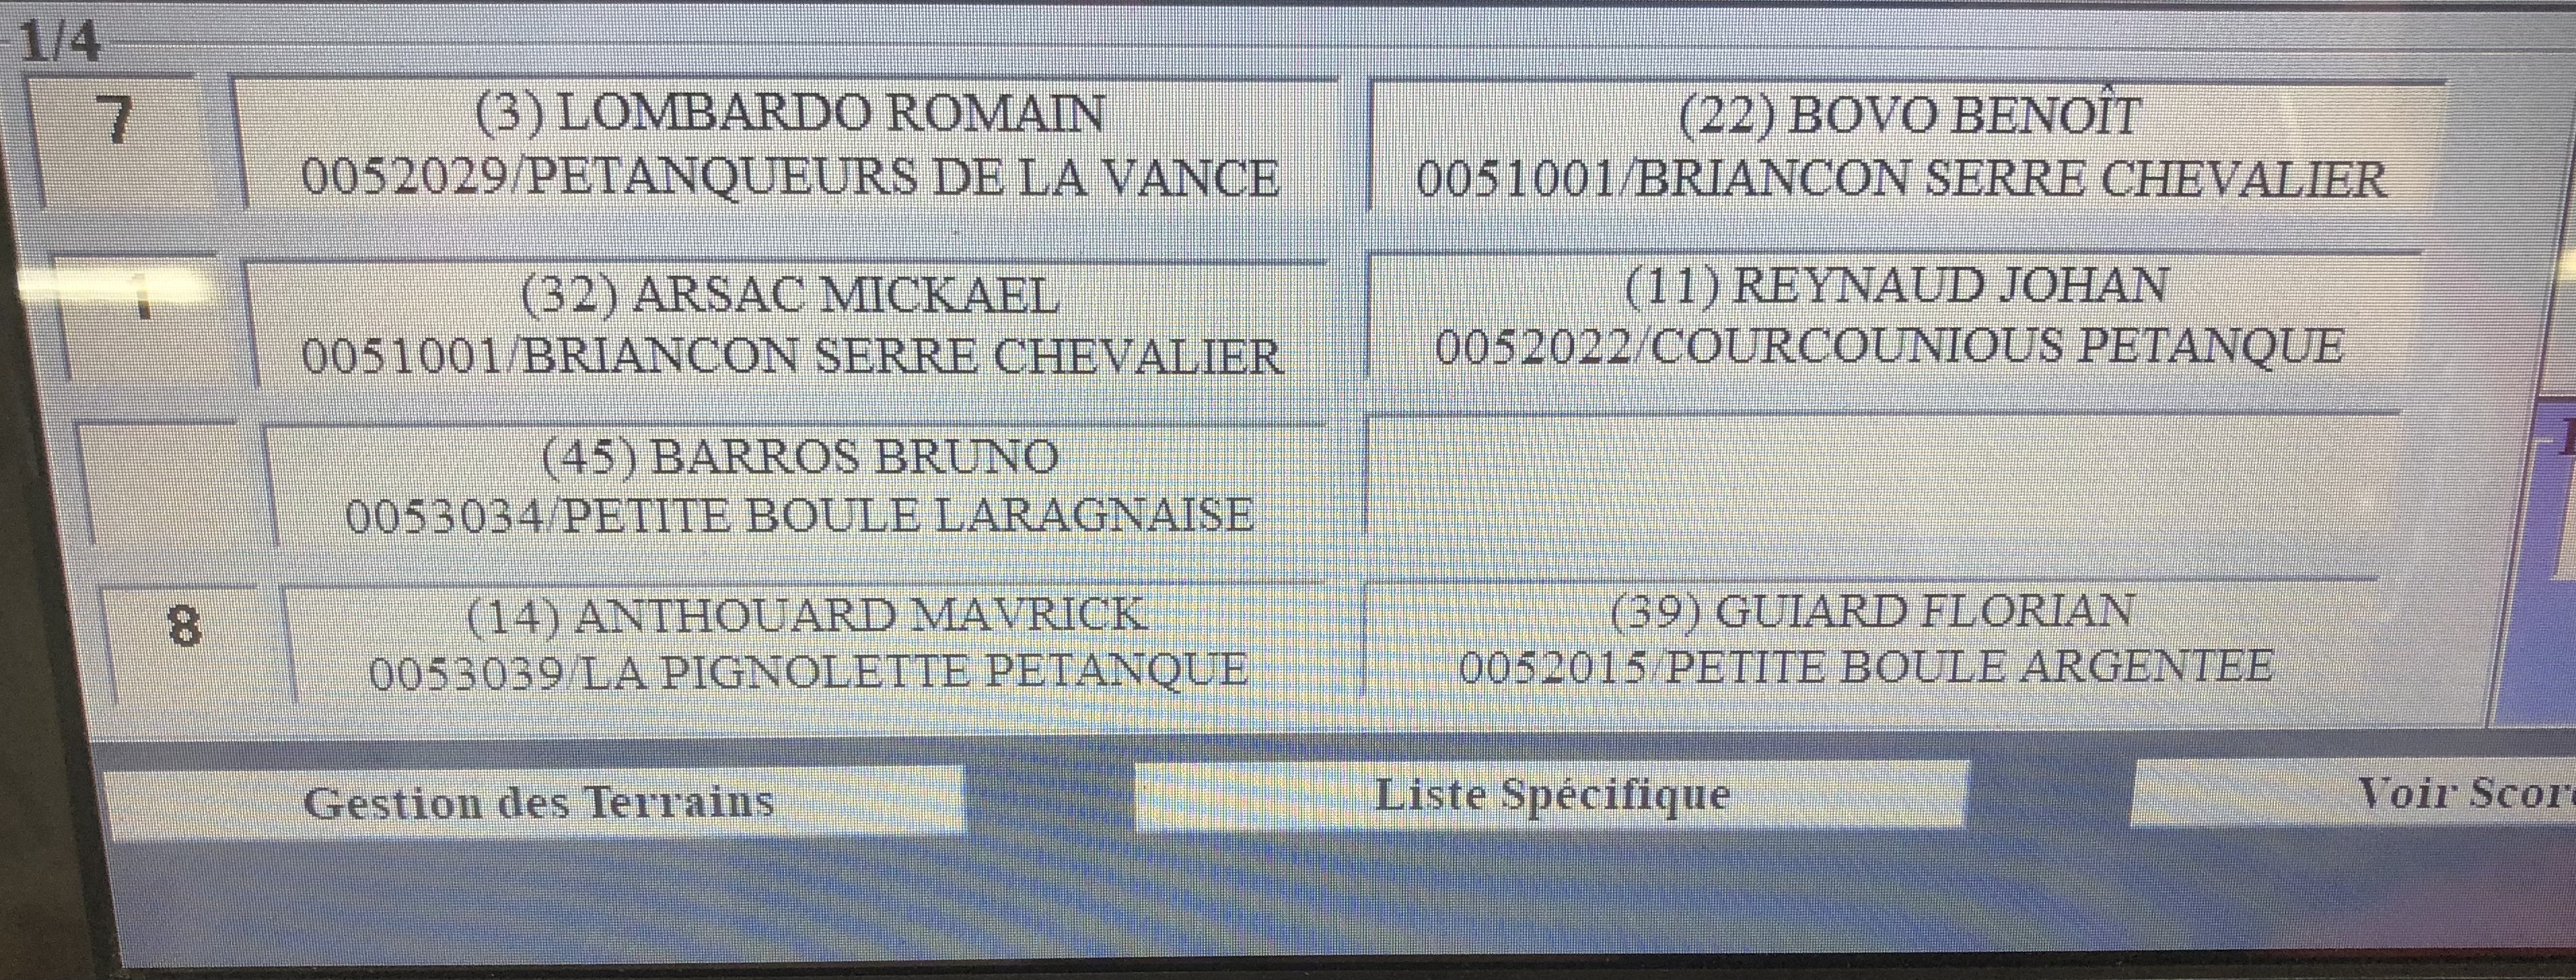 1/4 de finale du championnat triplette Jeu Provençal de Briançon 6 juin 2021